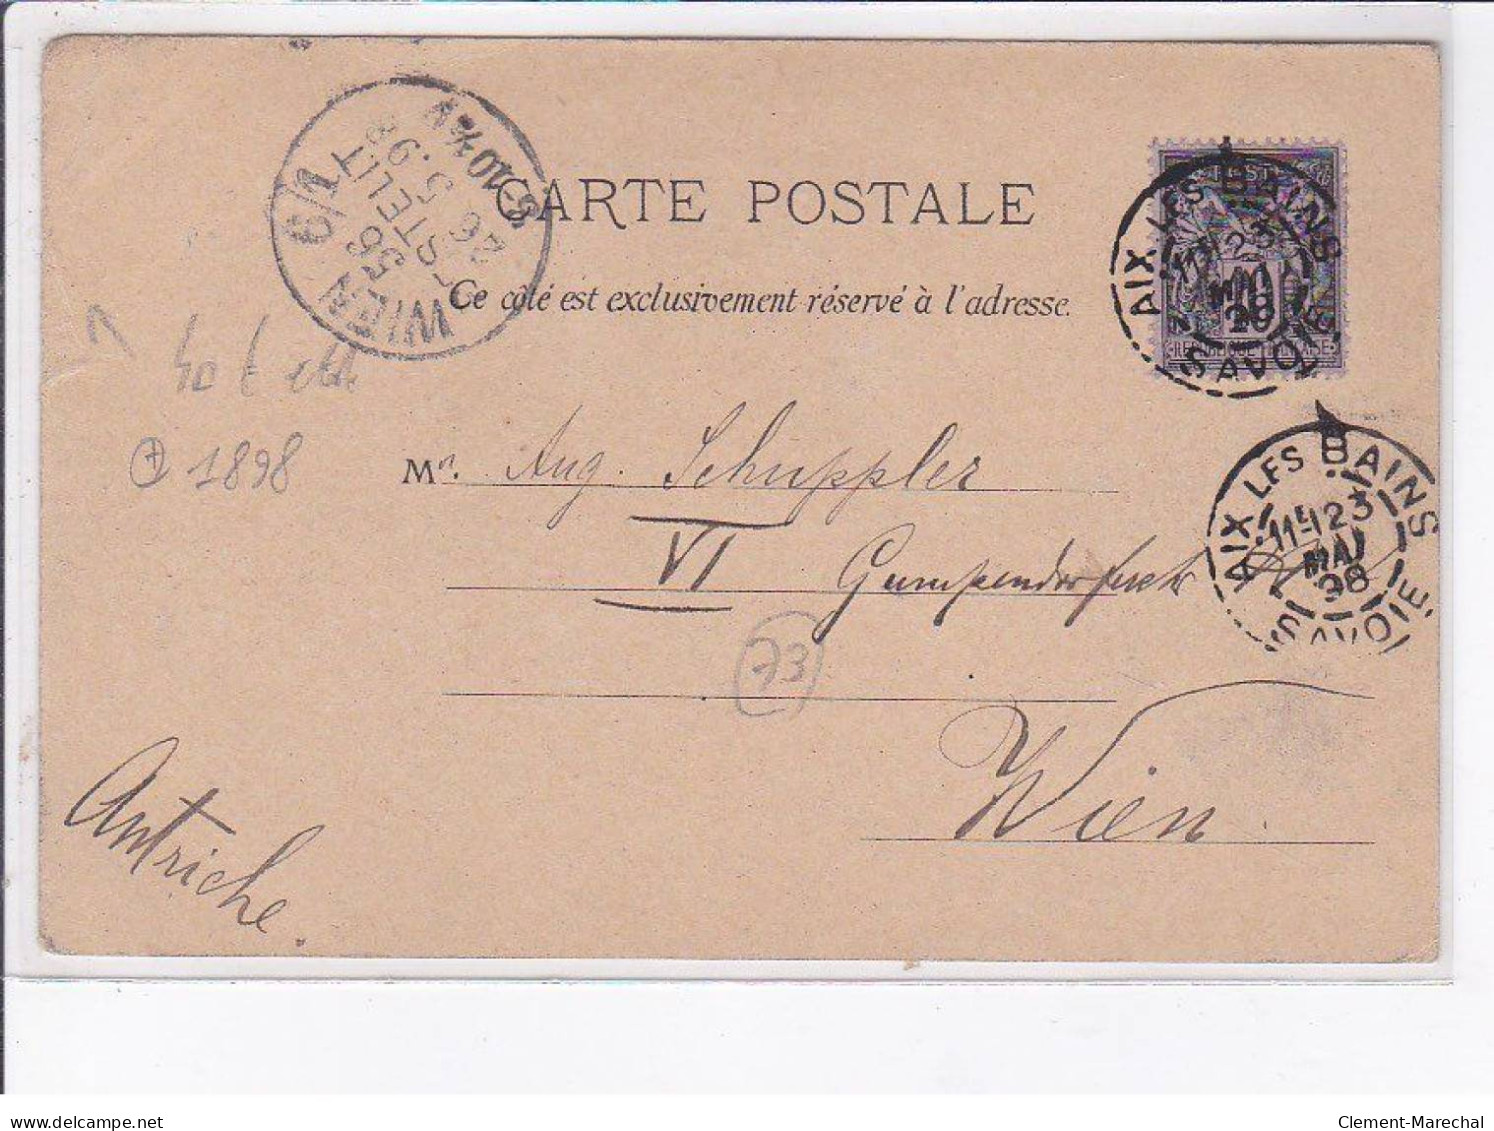 AIX-LES-BAINS: Souvenir, 1898 - état - Aix Les Bains